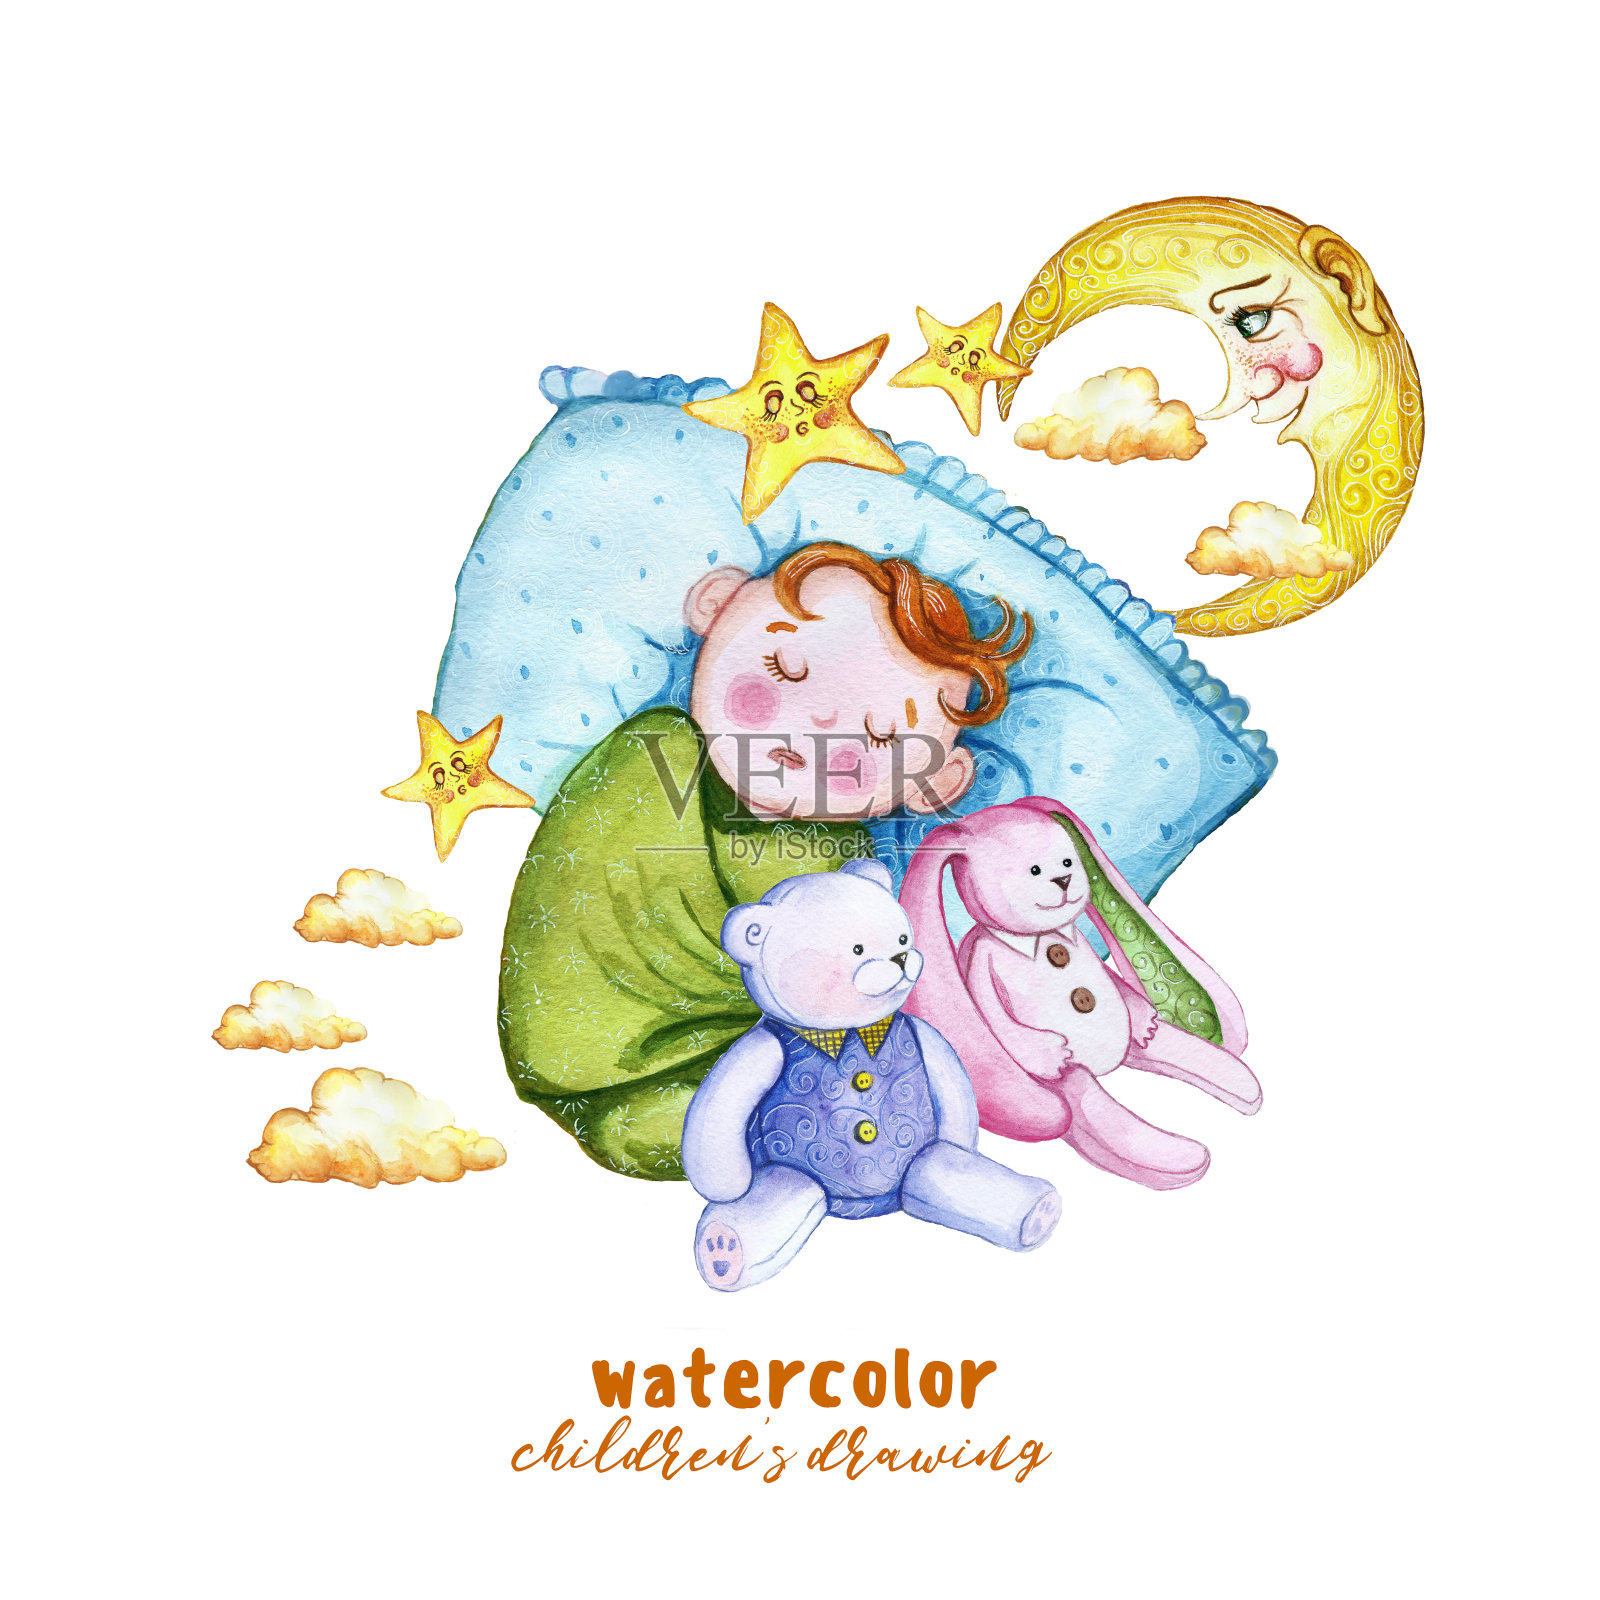 水彩画打印的儿童插画，一个孩子在尿布，婴儿是睡在枕头上，周围的星星和云彩，坐在旁边的一个柔软的玩具兔和熊，毛绒玩具为装饰和设计的儿童插画图片素材